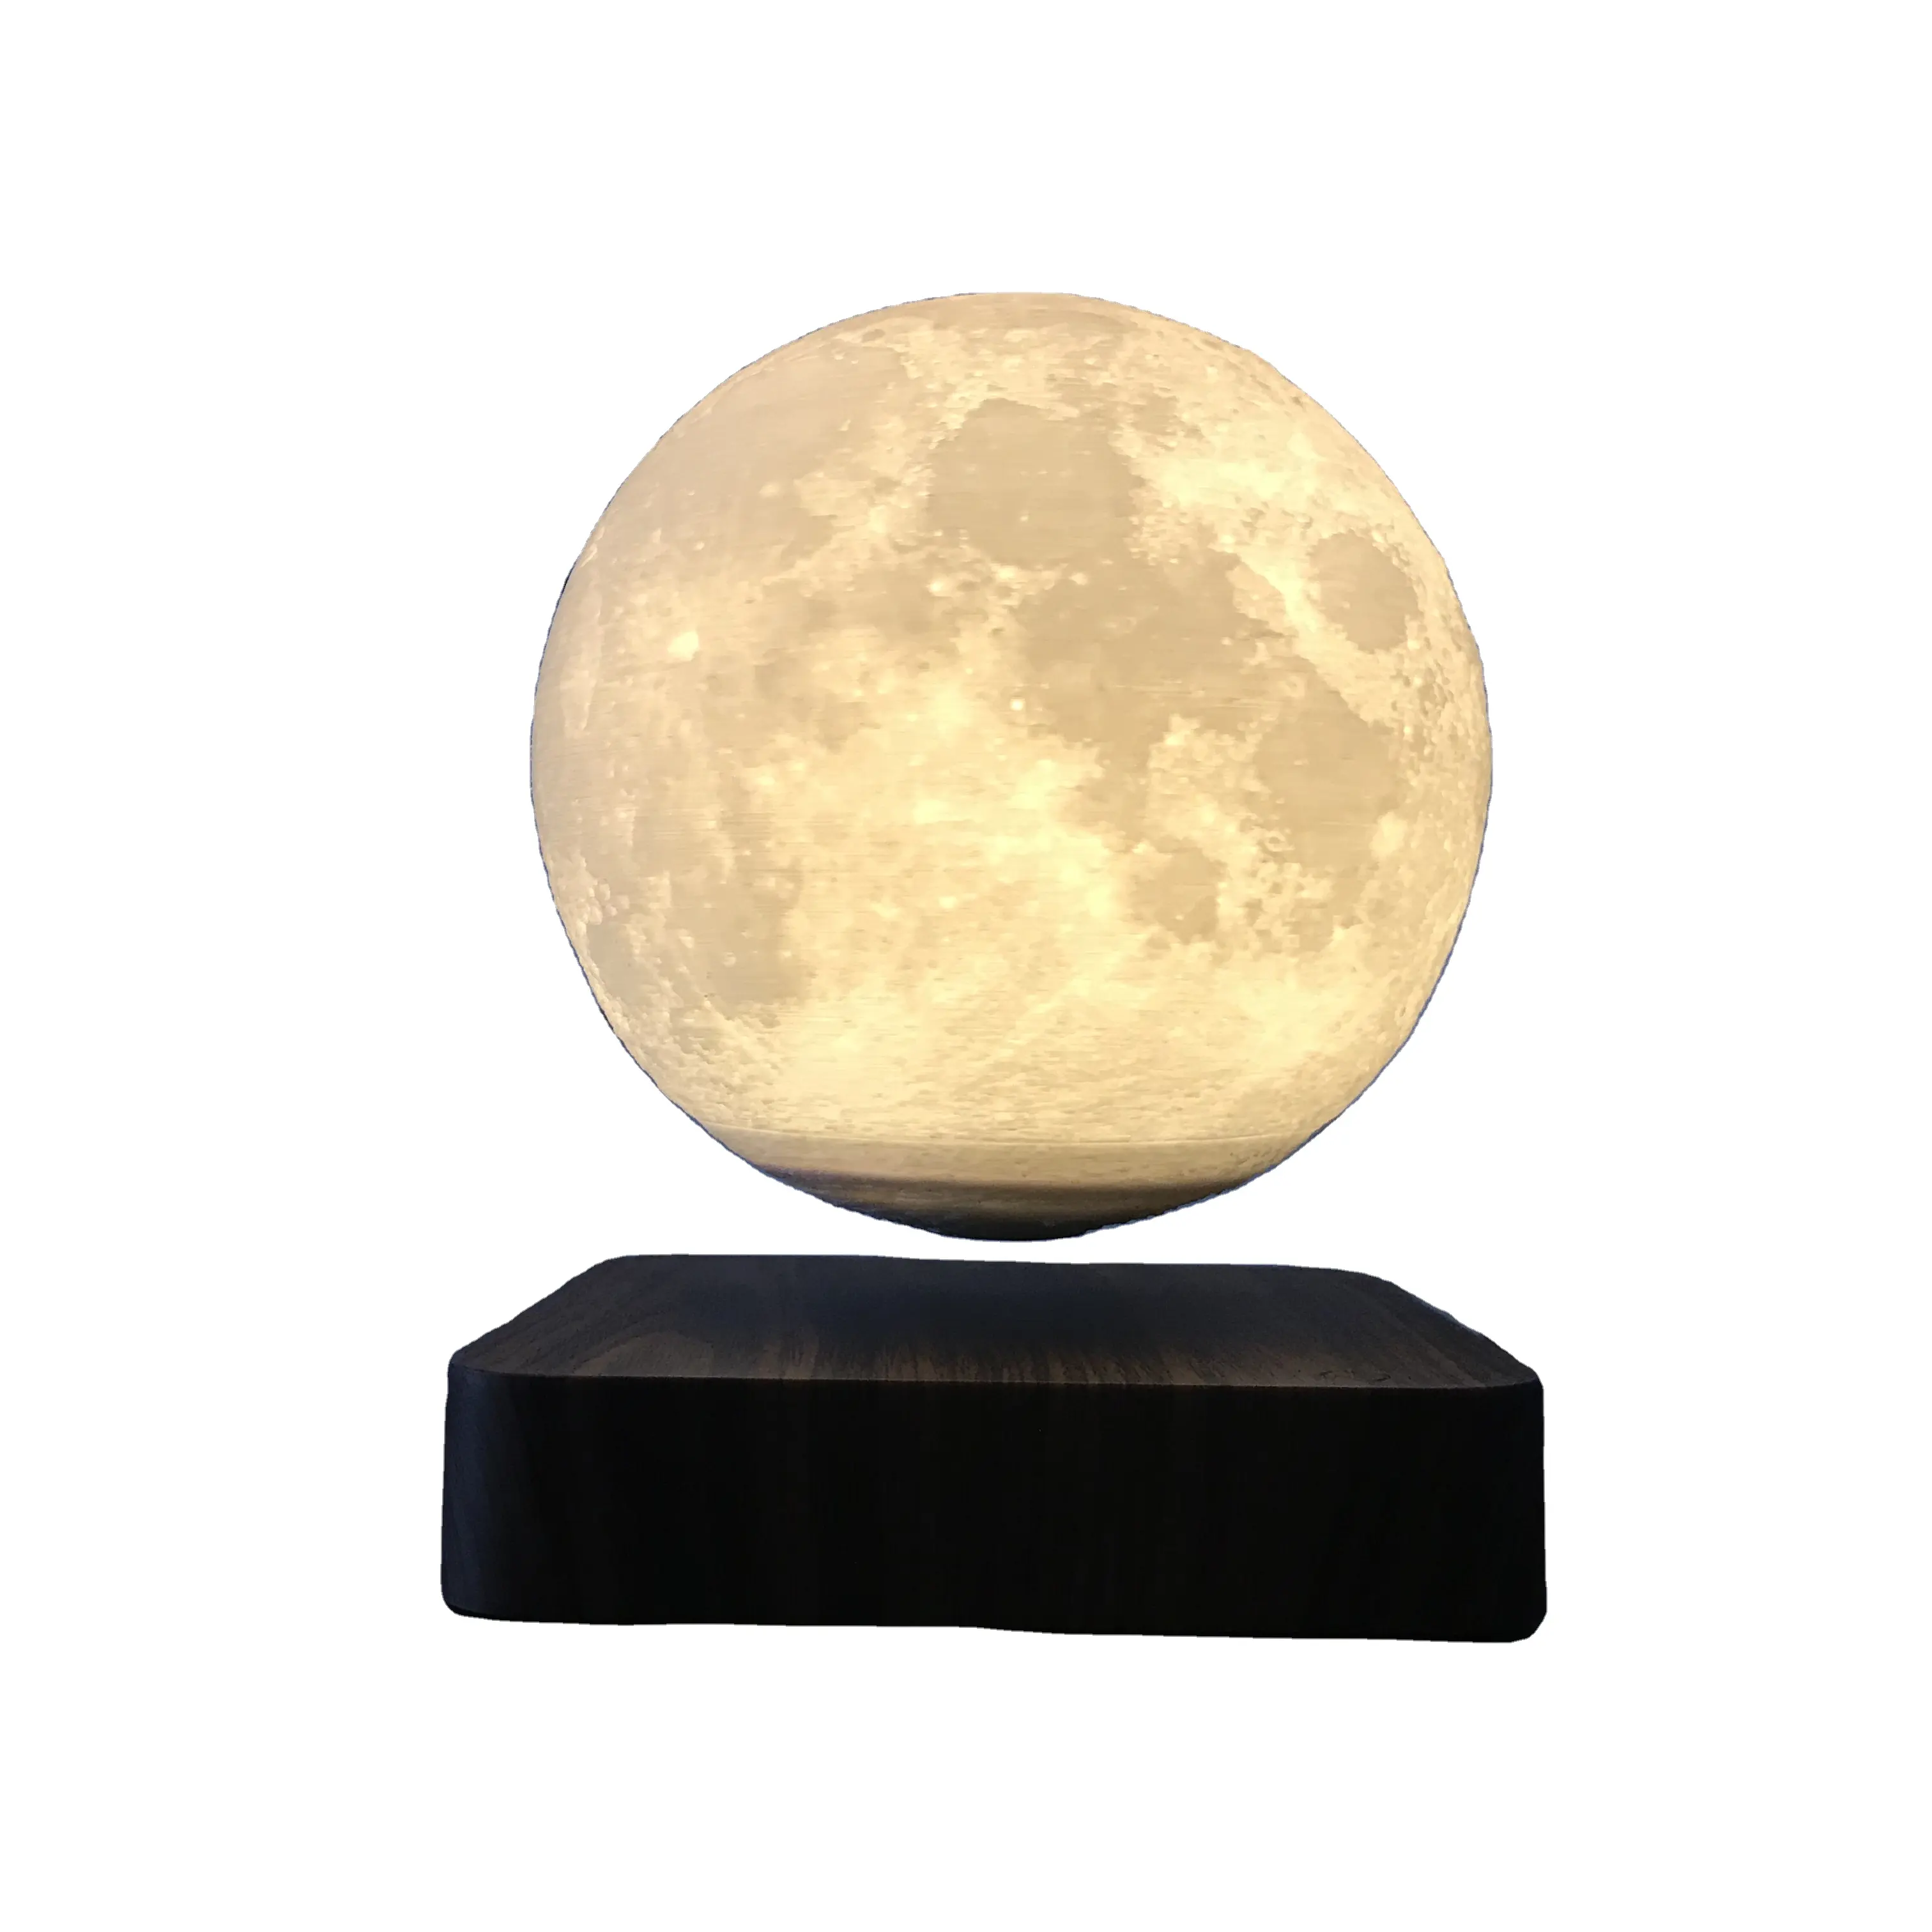 HCNT üretici manyetik levitasyonunun ay lambası 3D baskı yüzen ay lambası